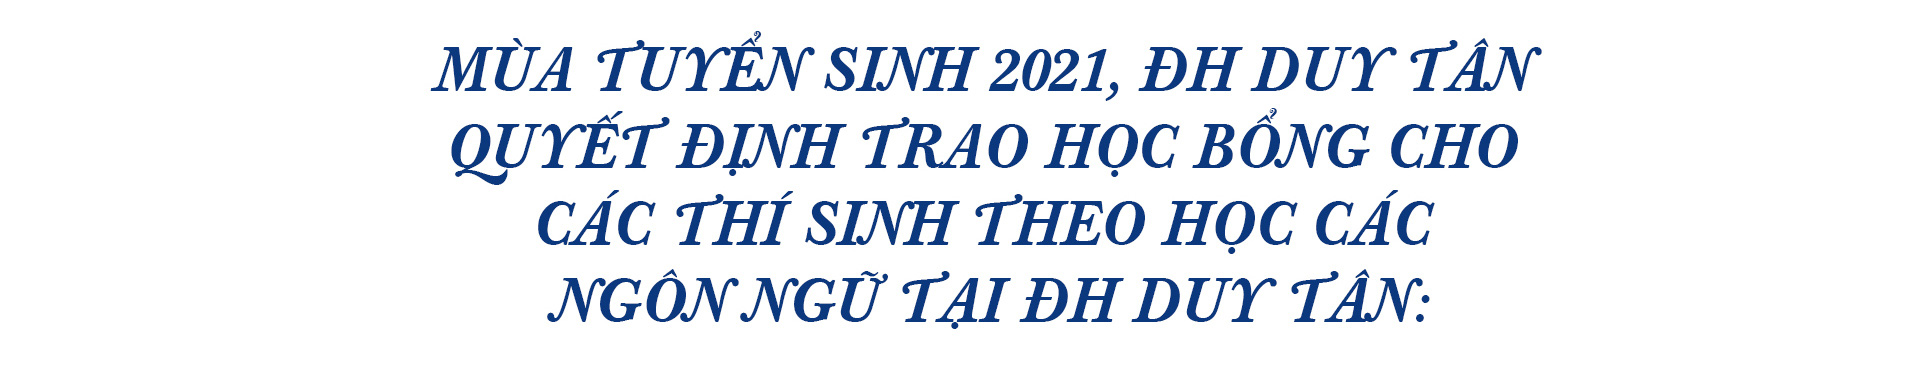 Thí sinh đạt 27,55/30 điểm học ngành du lịch tại ĐH Duy Tân năm 2021 Layer-11-16283286443282042547853